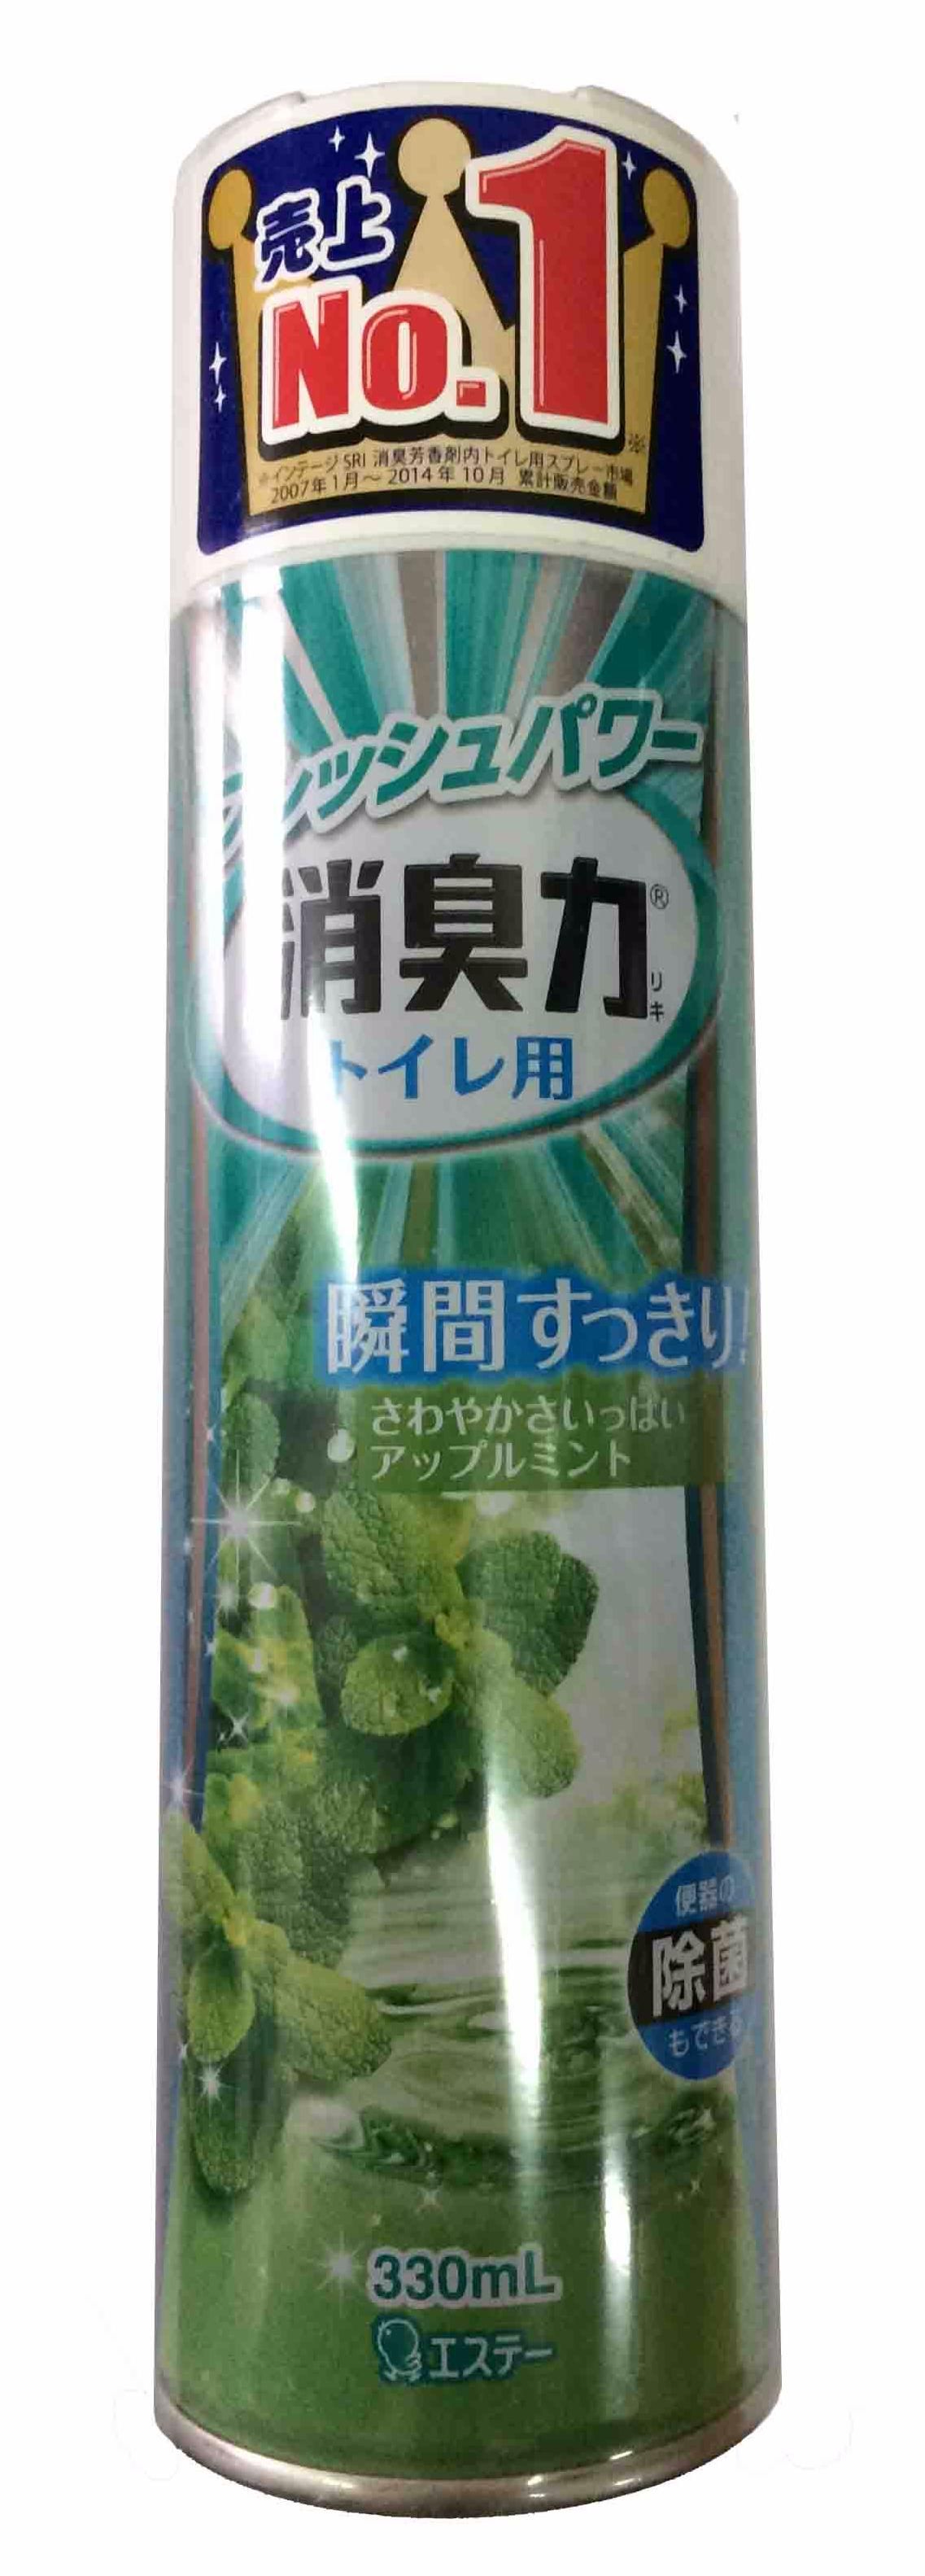 ST Shoushuuriki Освежитель воздуха антибактериальный для туалета с ароматом Яблока и мяты 330 мл